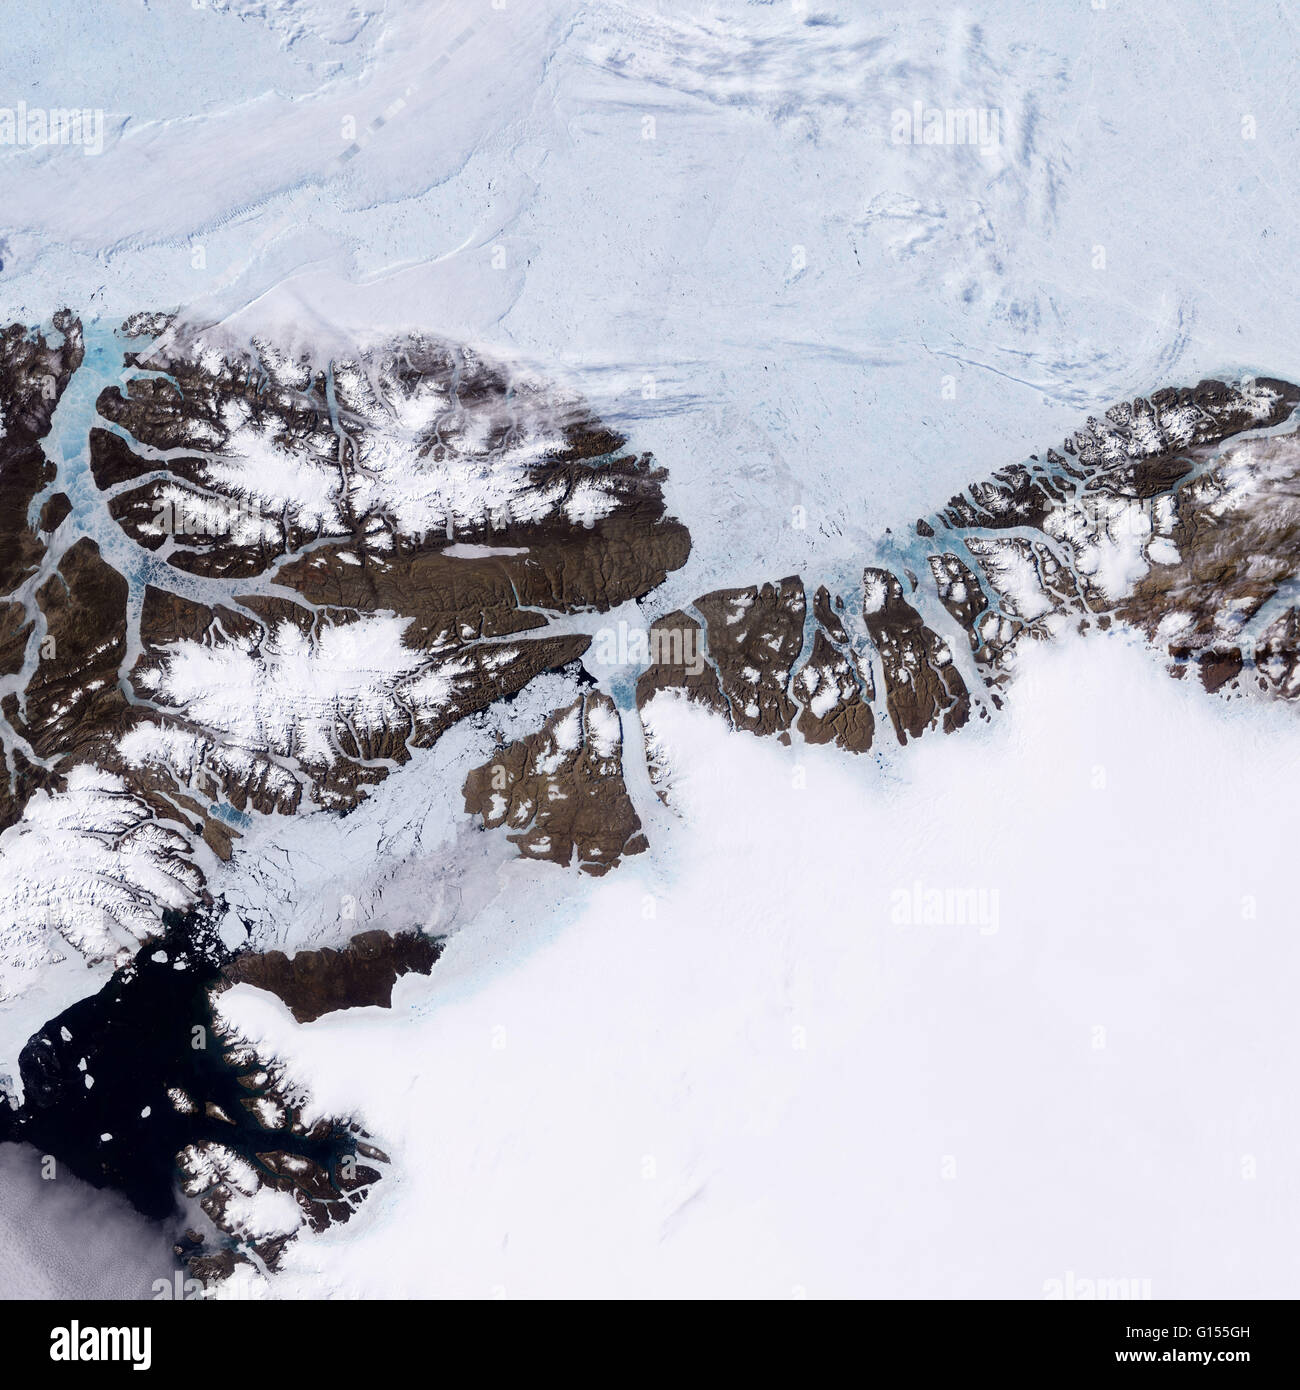 In Groenlandia, decine di migliaia di anni di nevicata si sono insediati e solidificato in una massiccia lastra di ghiaccio. Ogni estate, neve ritiri brevemente a basse altitudini e una stretta striscia di costa rocciosa emerge. Come si assottiglia e fratture, mare di ghiaccio che il pack Foto Stock